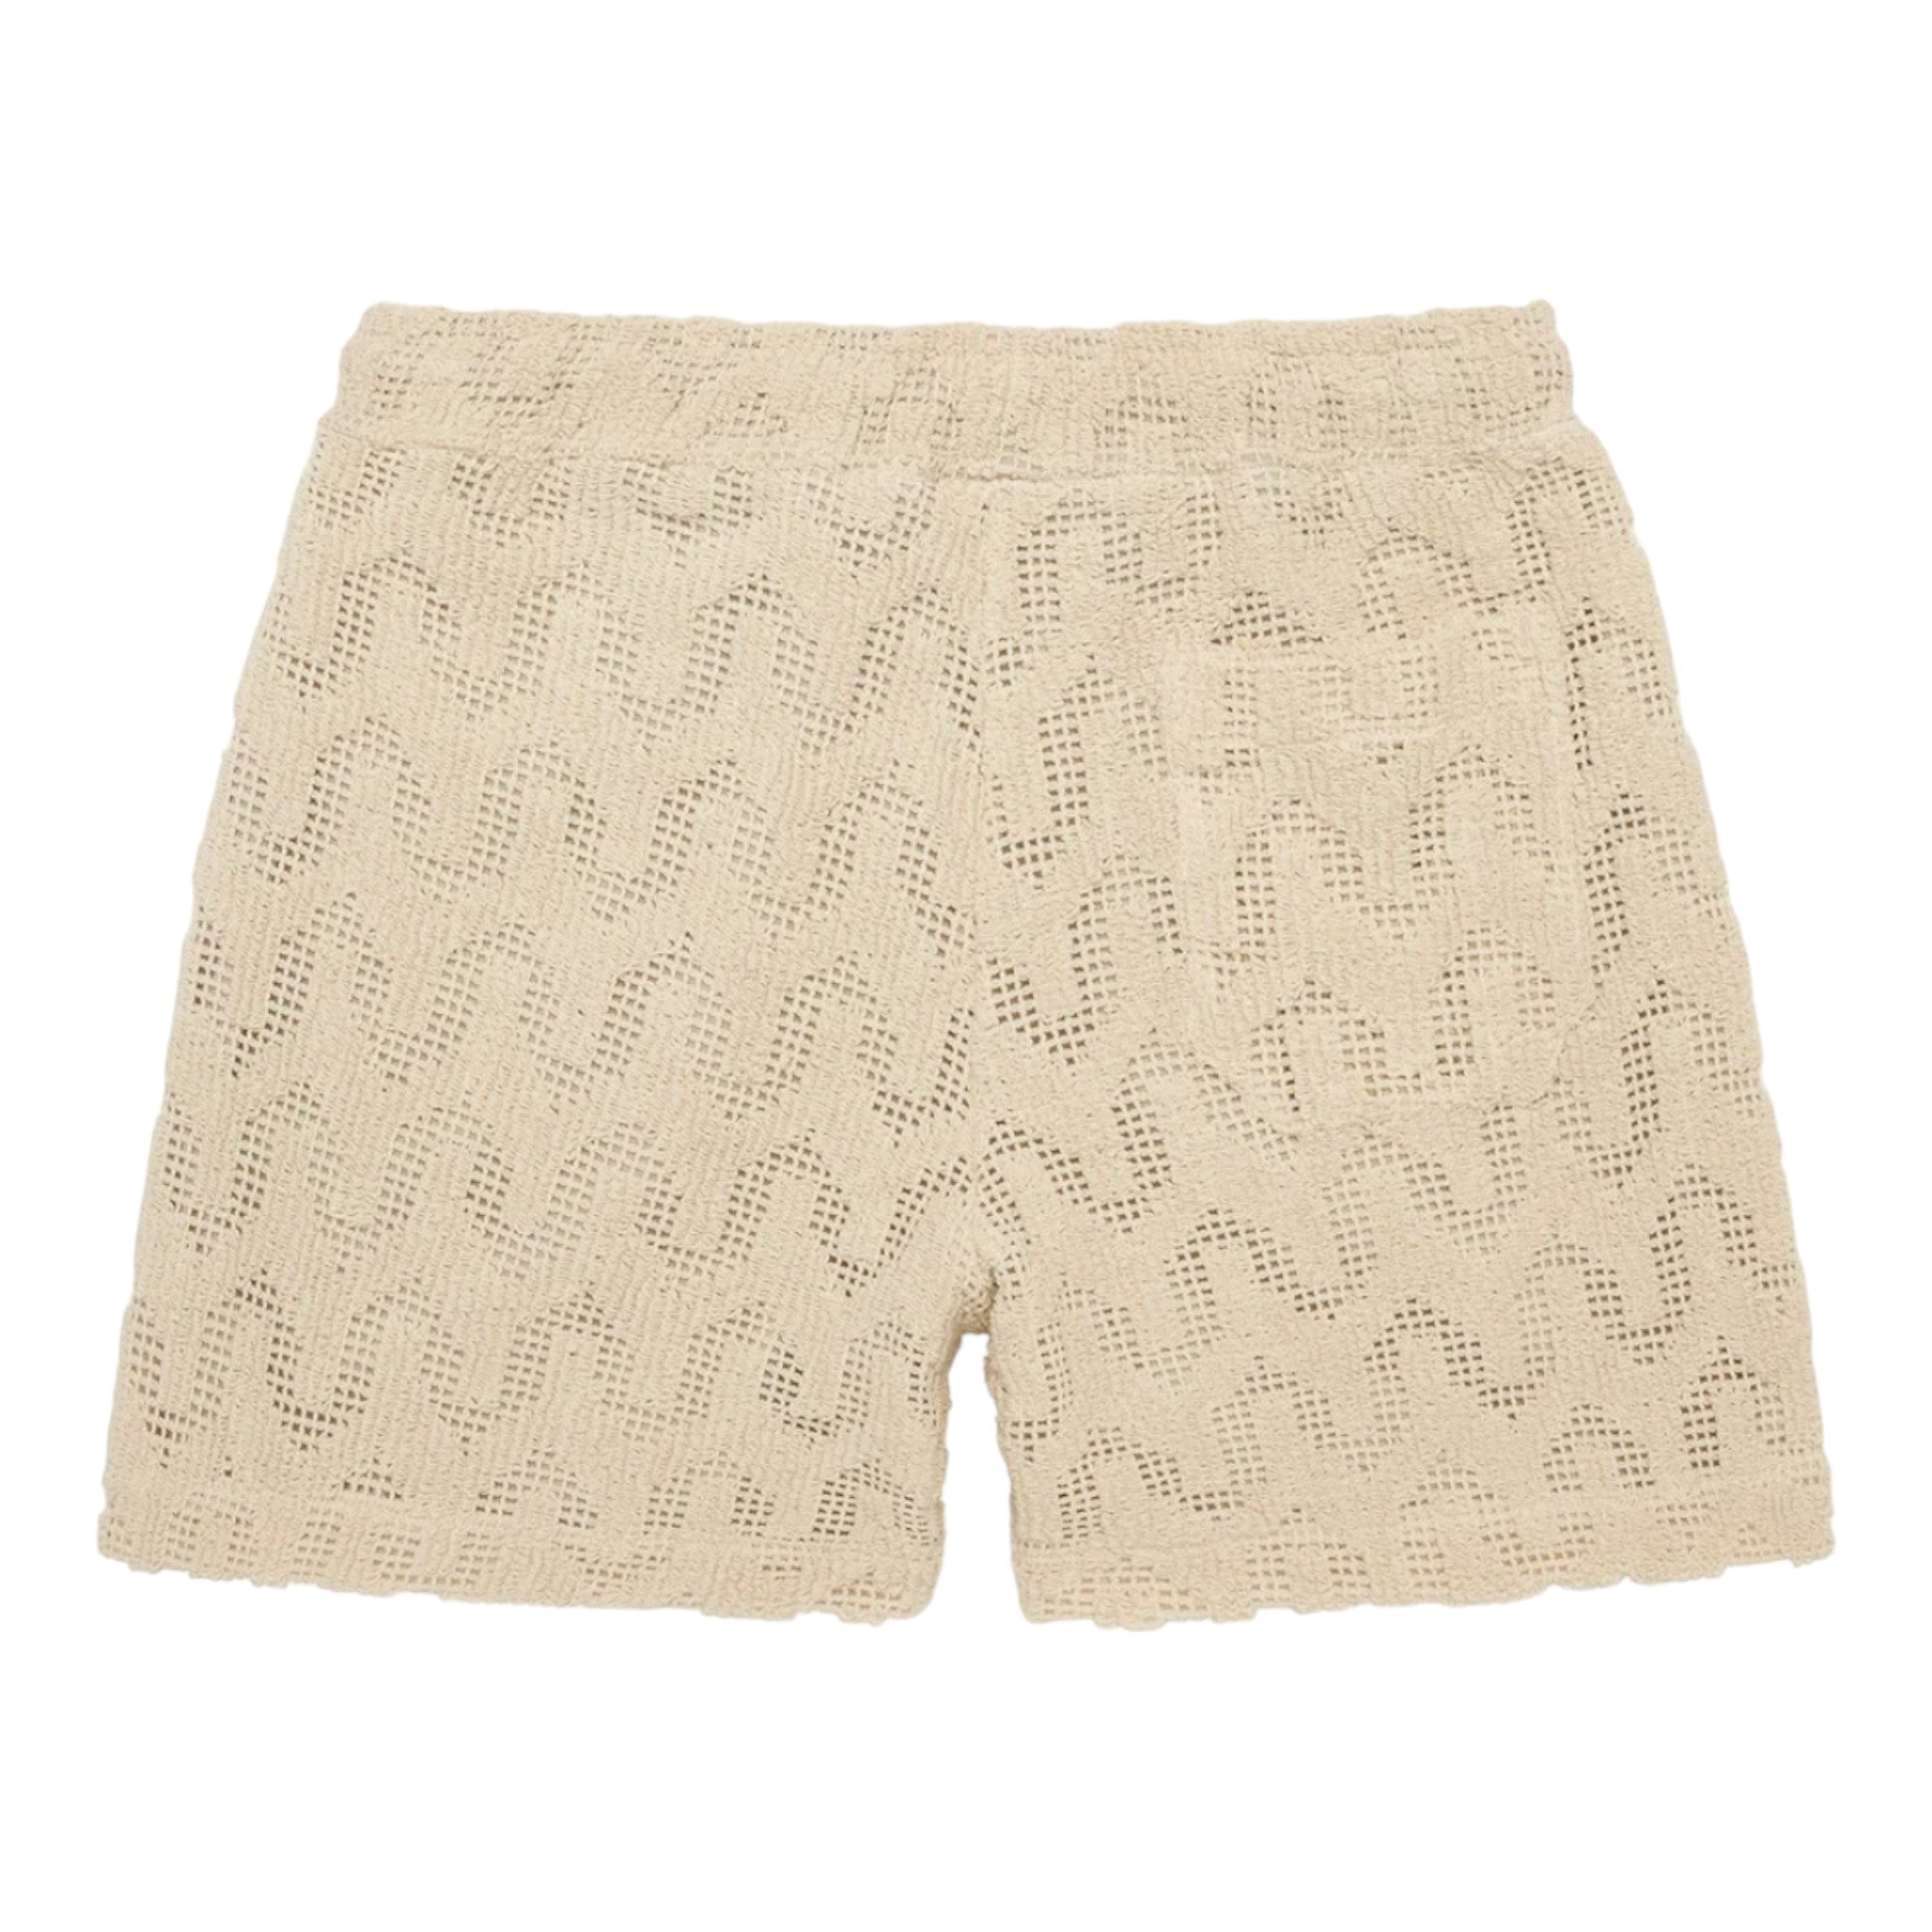 OAS - Atlas Crochet Shorts